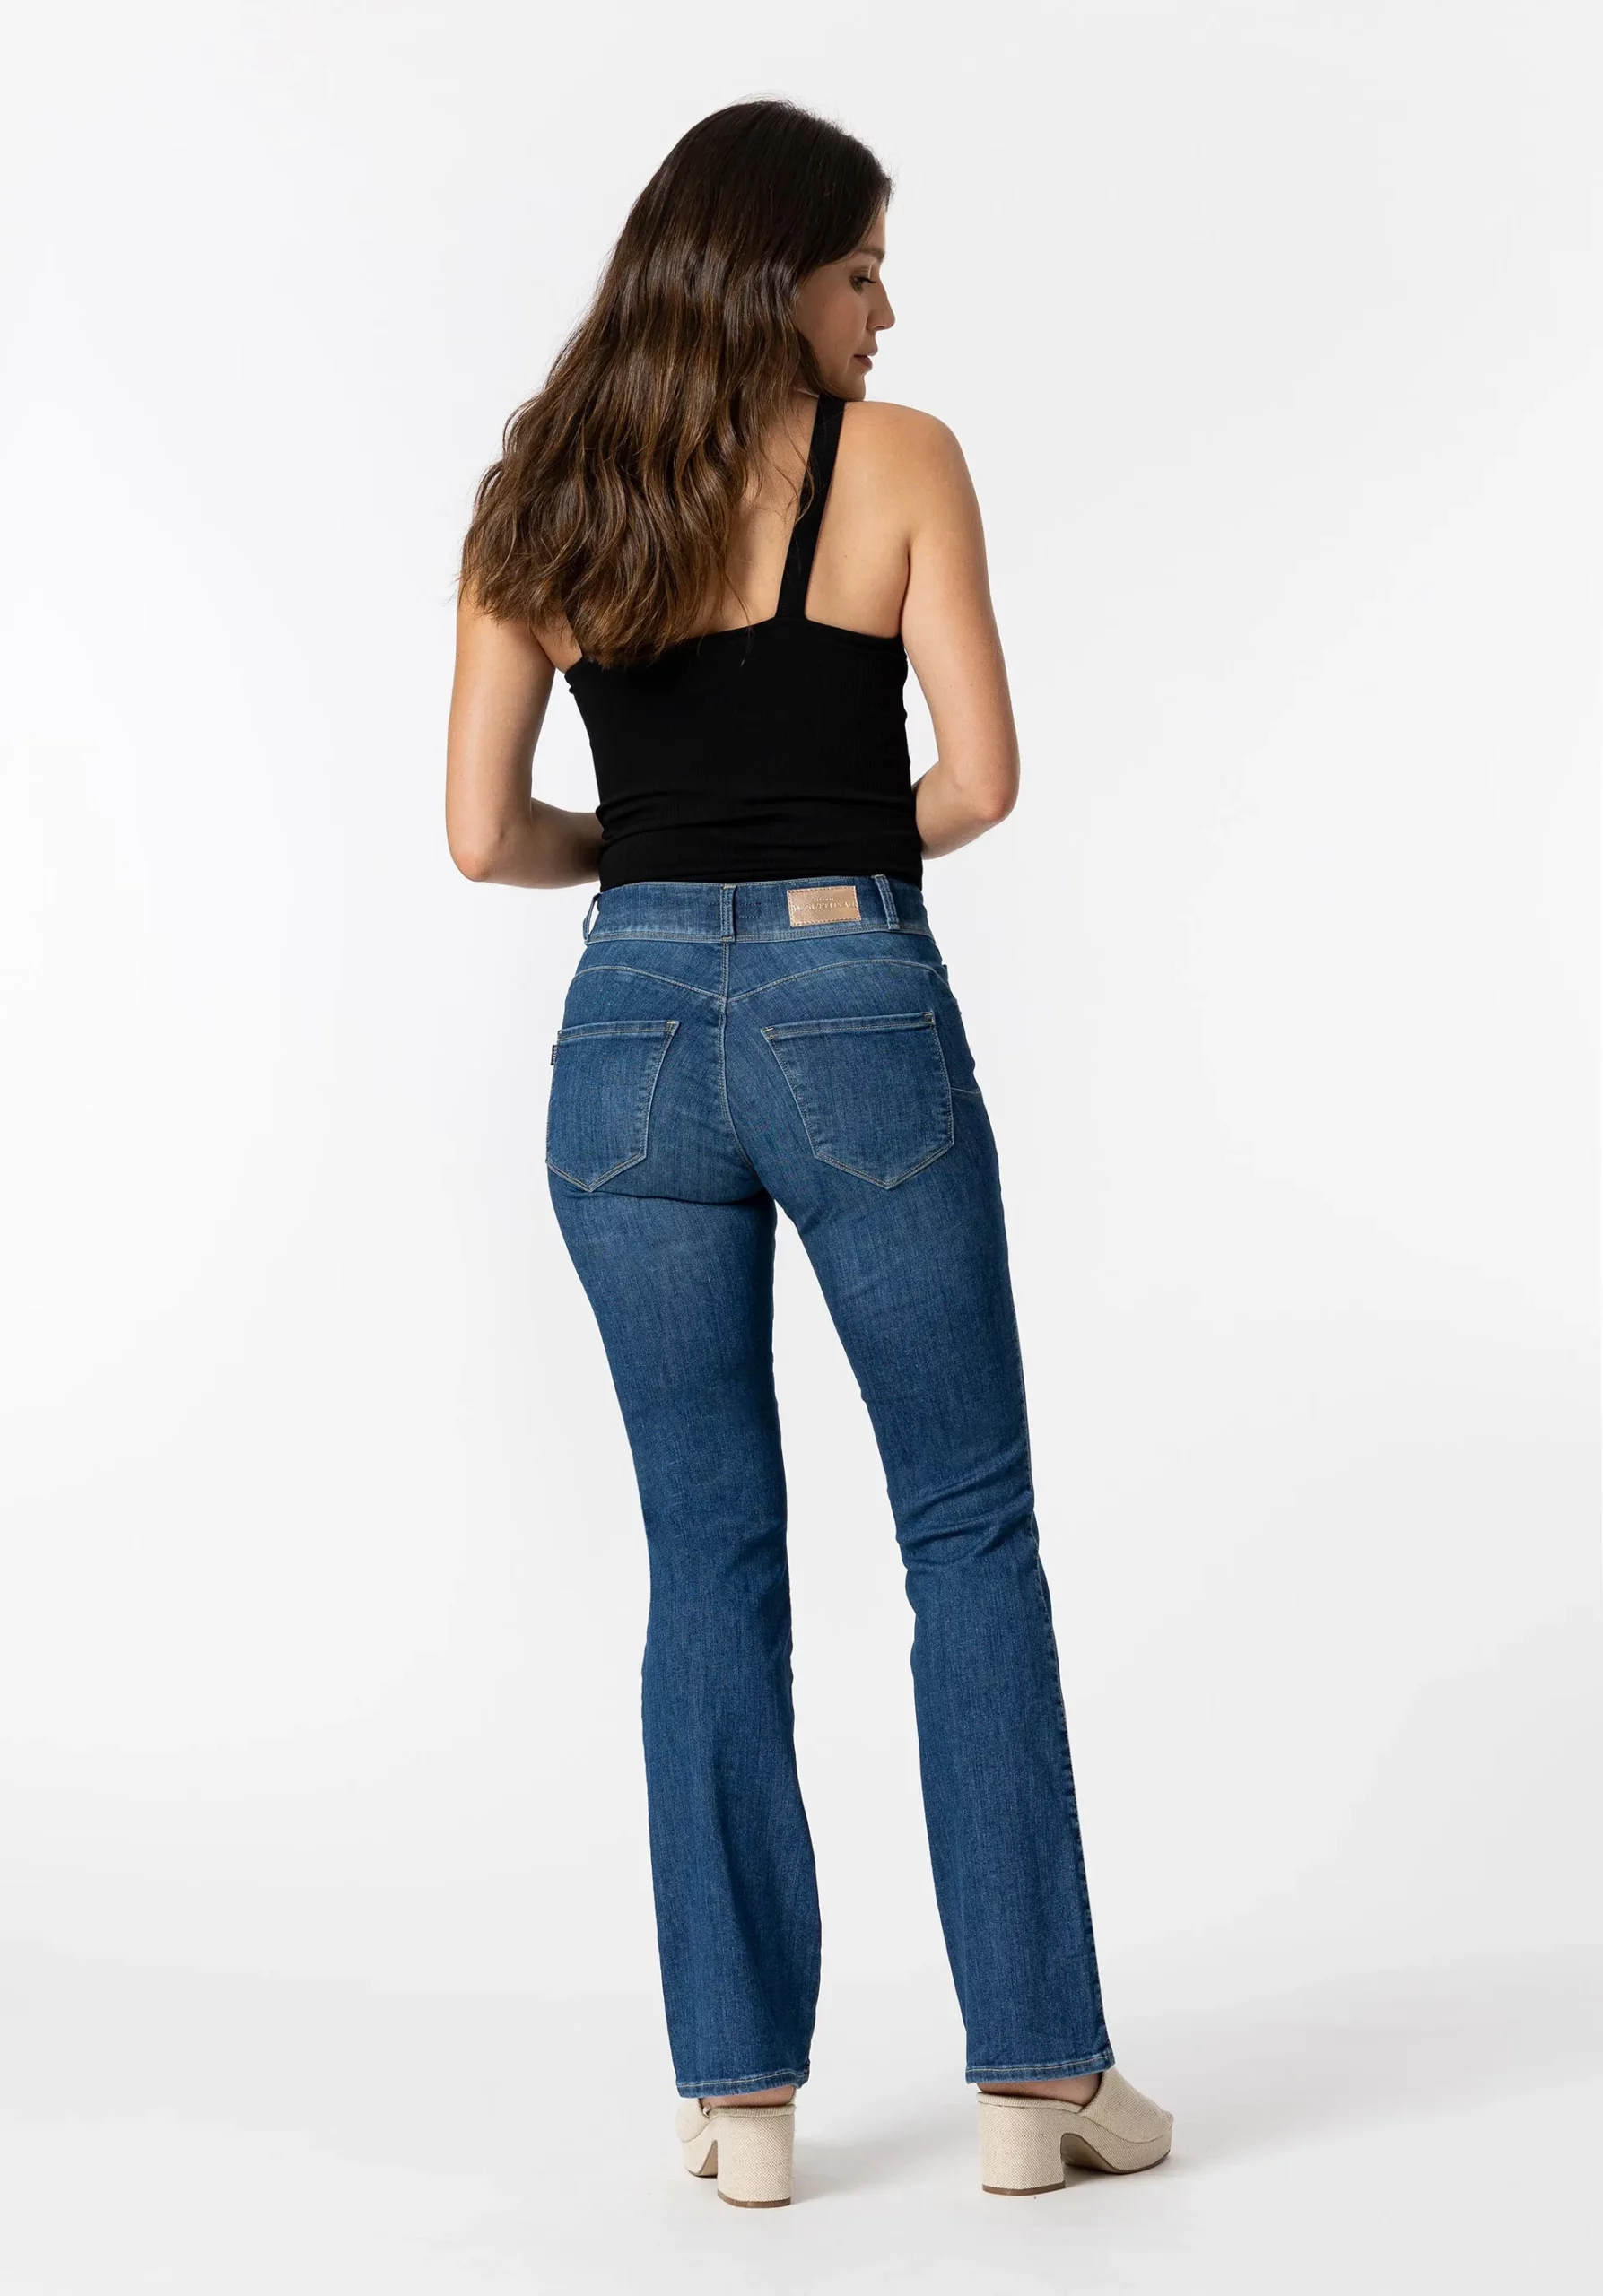 Jeans One Size Bootcut Silhouette Tiro Alto 4 C